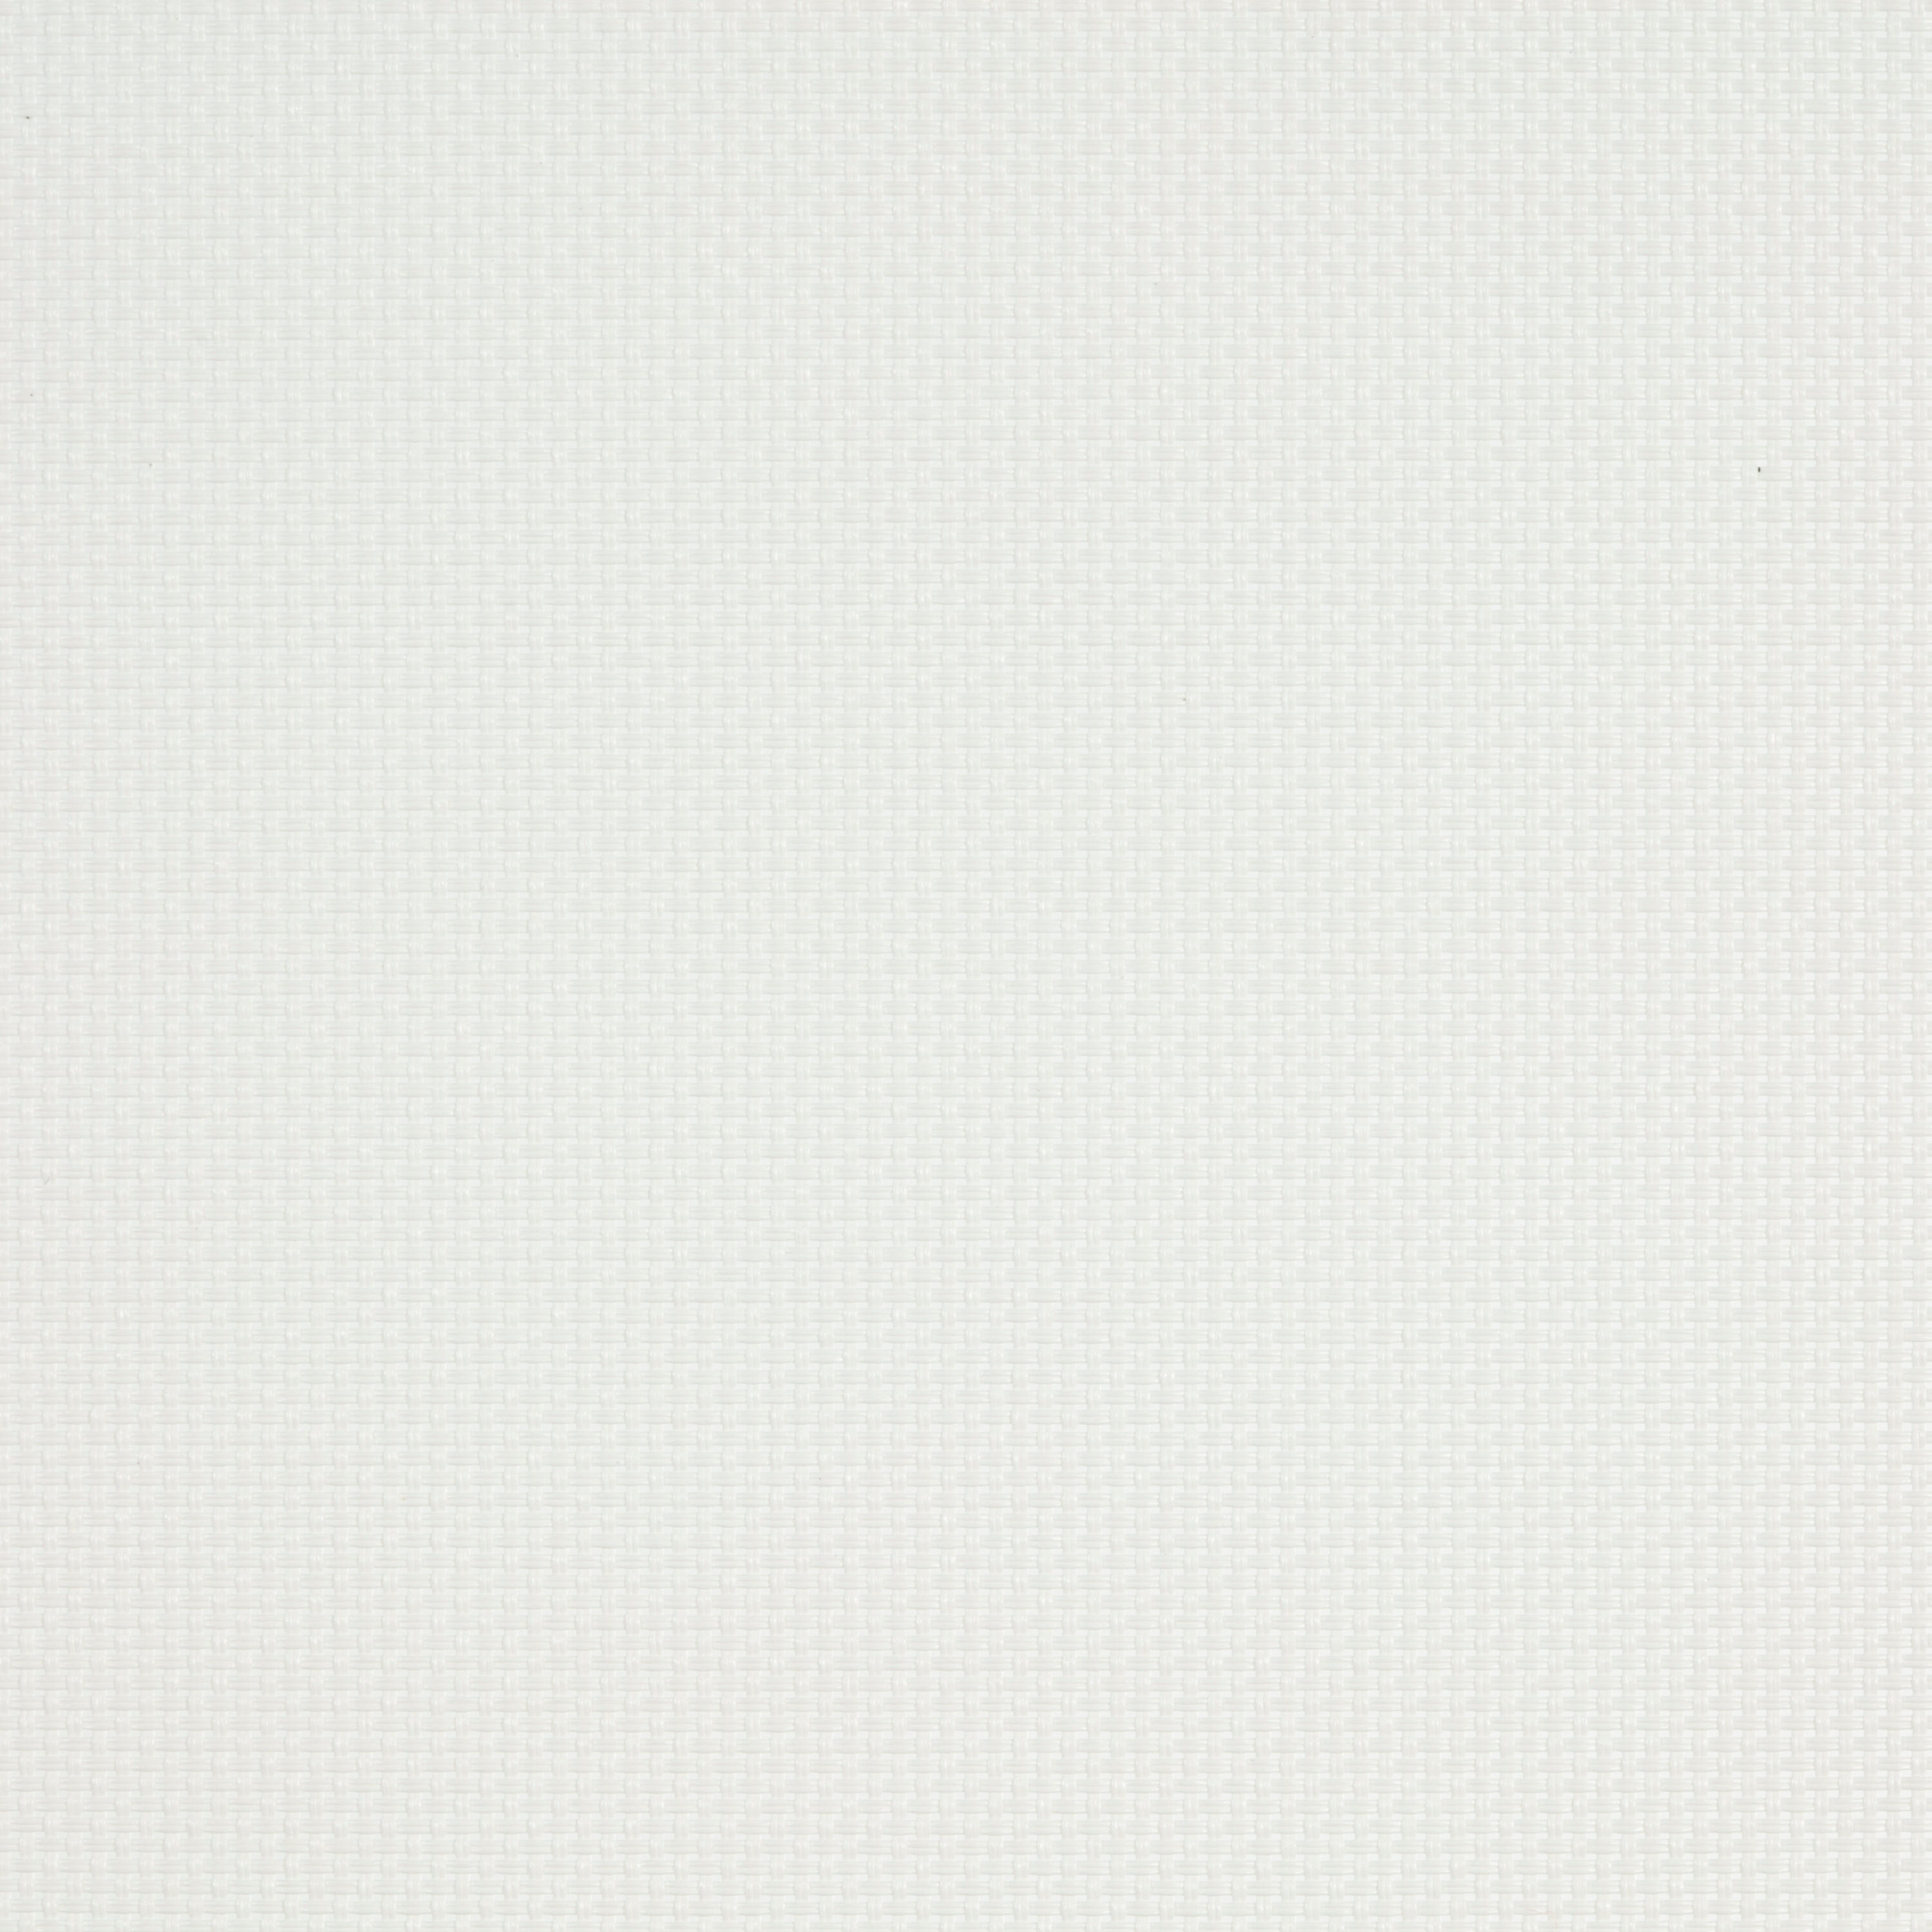 Tenda a rullo filtrante INSPIRE Brasilia bianco 220 x 250 cm - 2